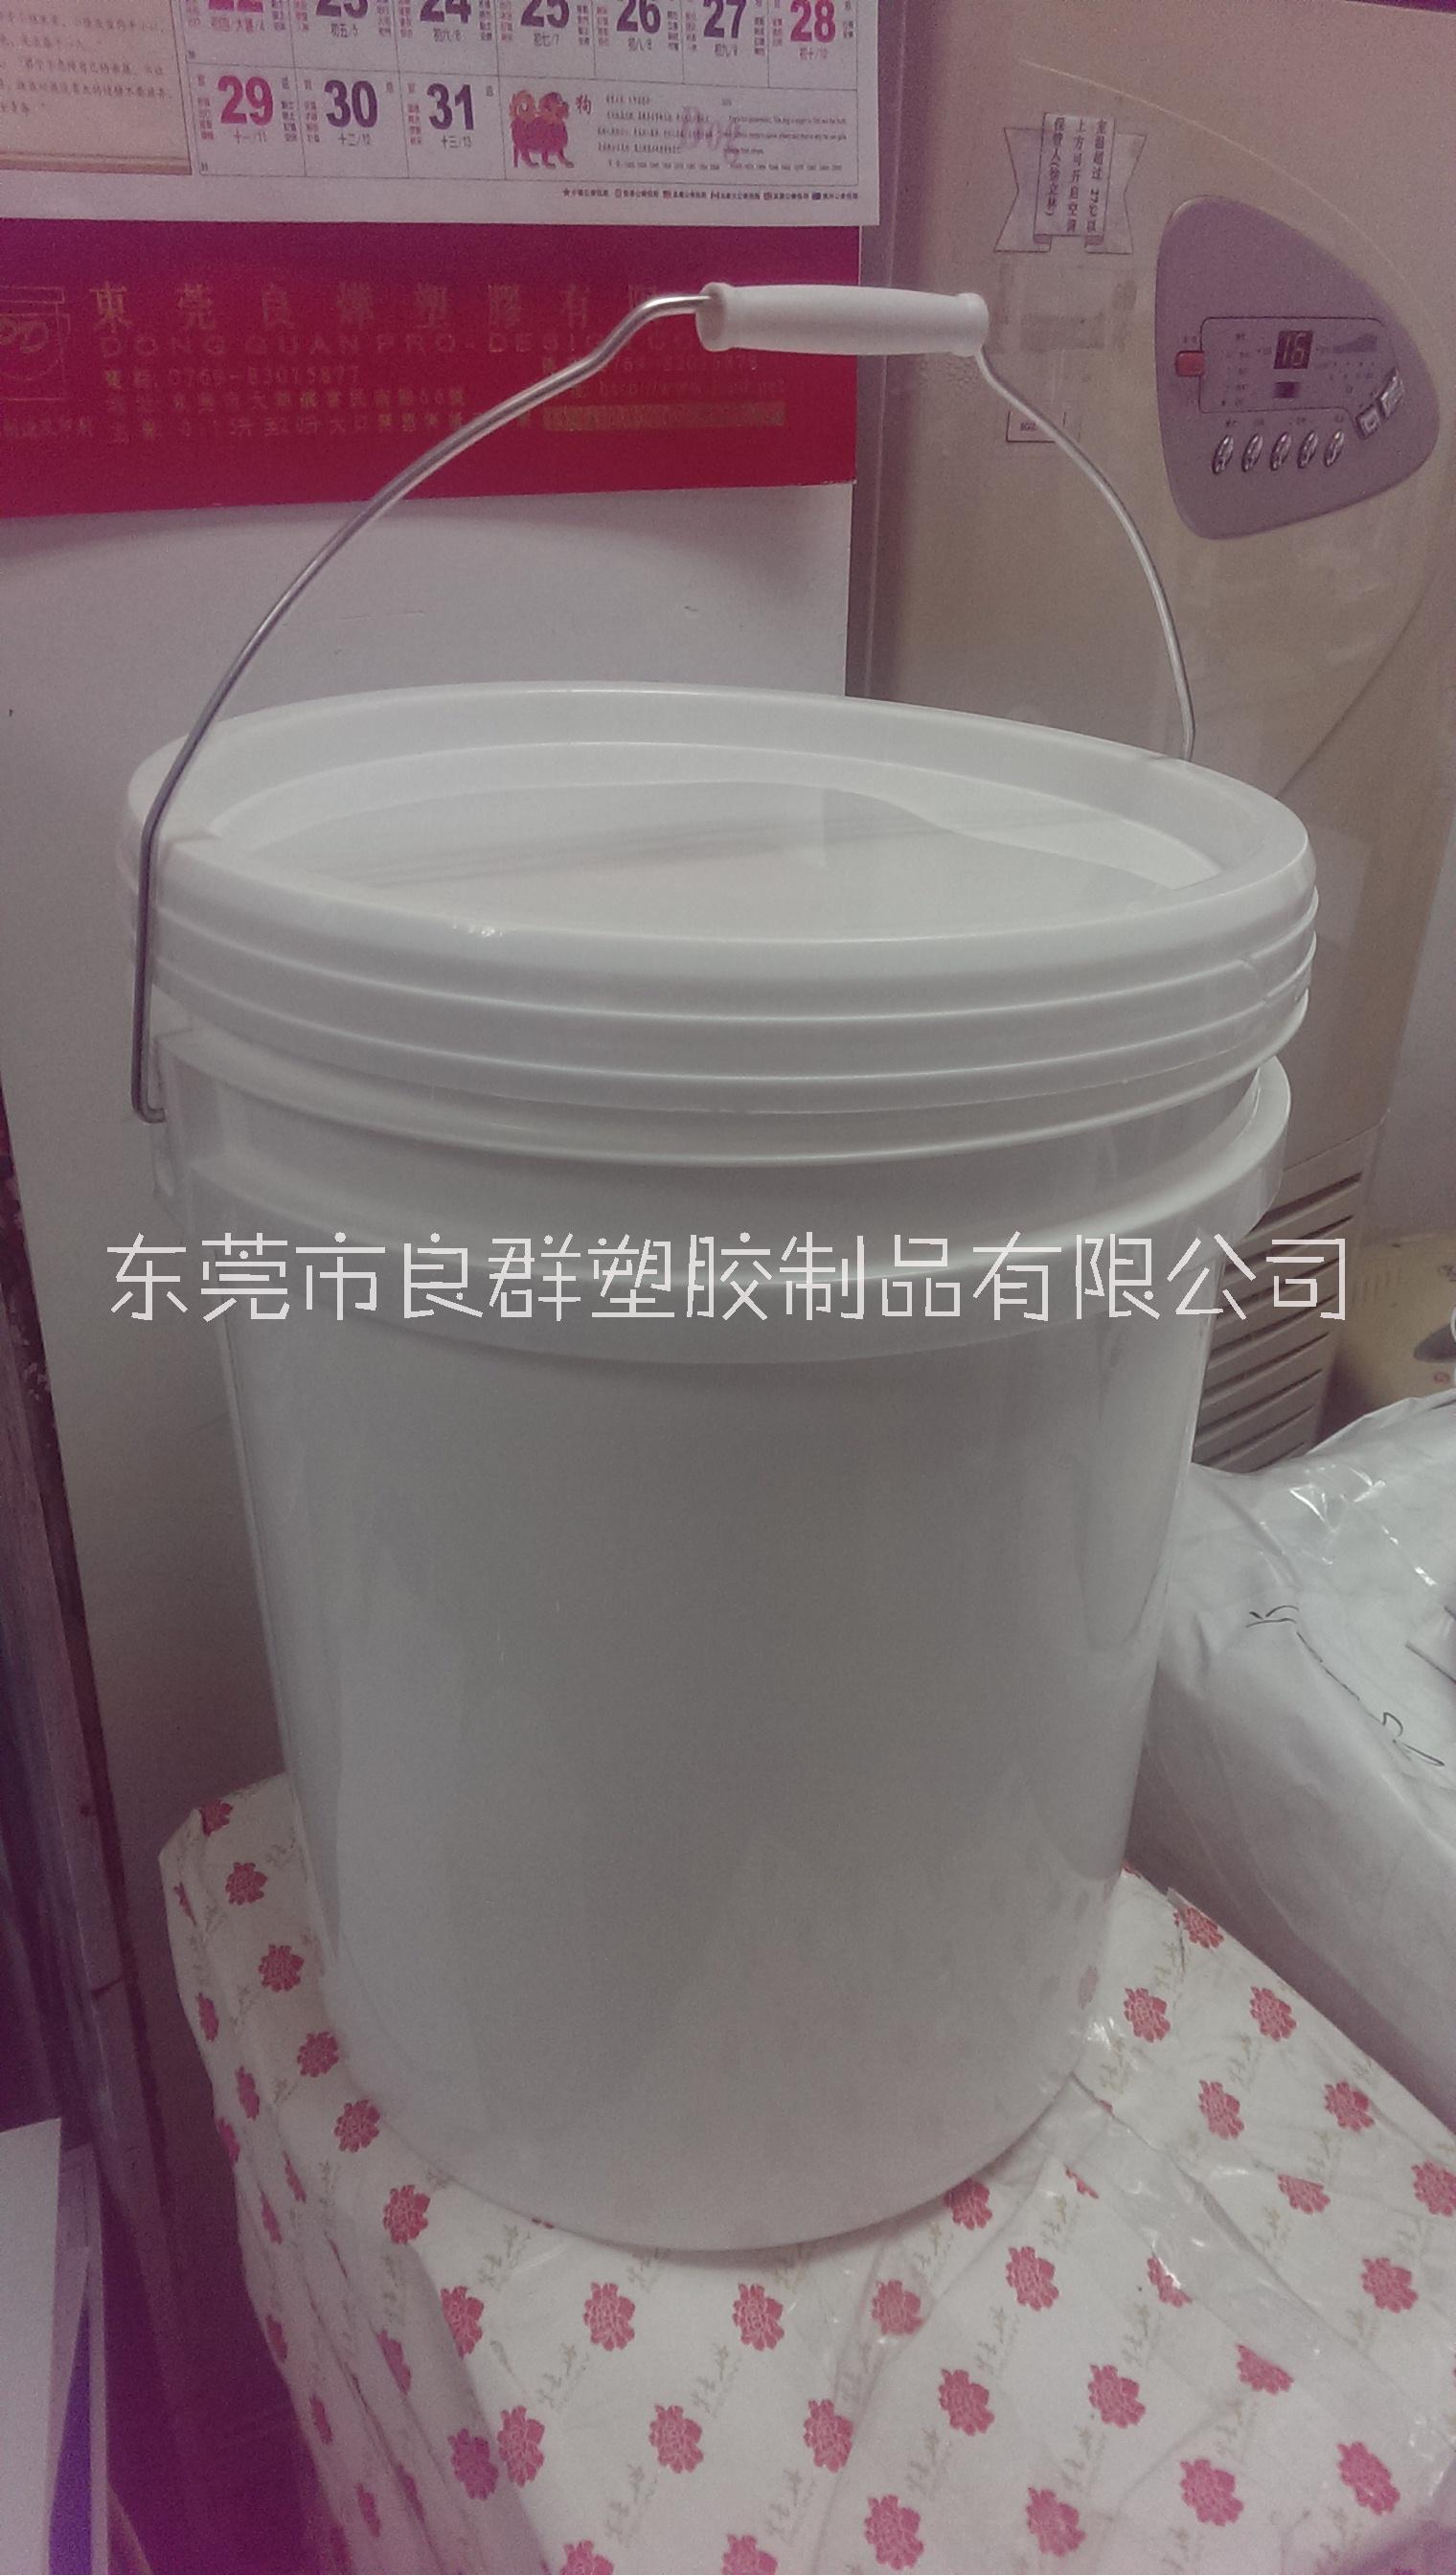 胶浆桶 东莞塑胶制品厂家 优质塑料桶供应 25L胶浆桶图片